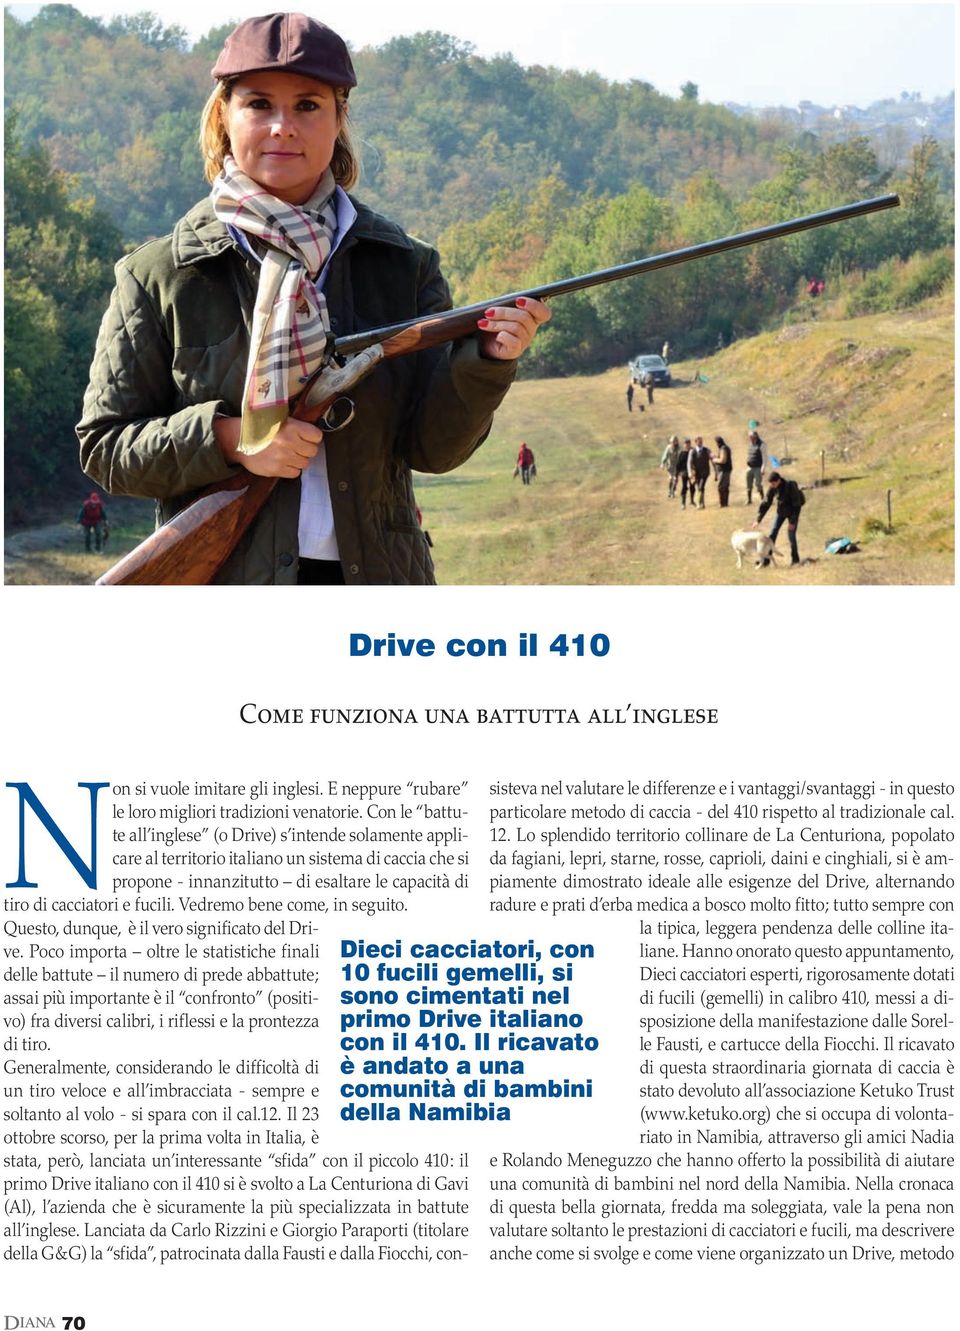 Con le battute all inglese (o Drive) s intende solamente applicare al territorio italiano un sistema di caccia che si propone - innanzitutto di esaltare le capacità di tiro di cacciatori e fucili.